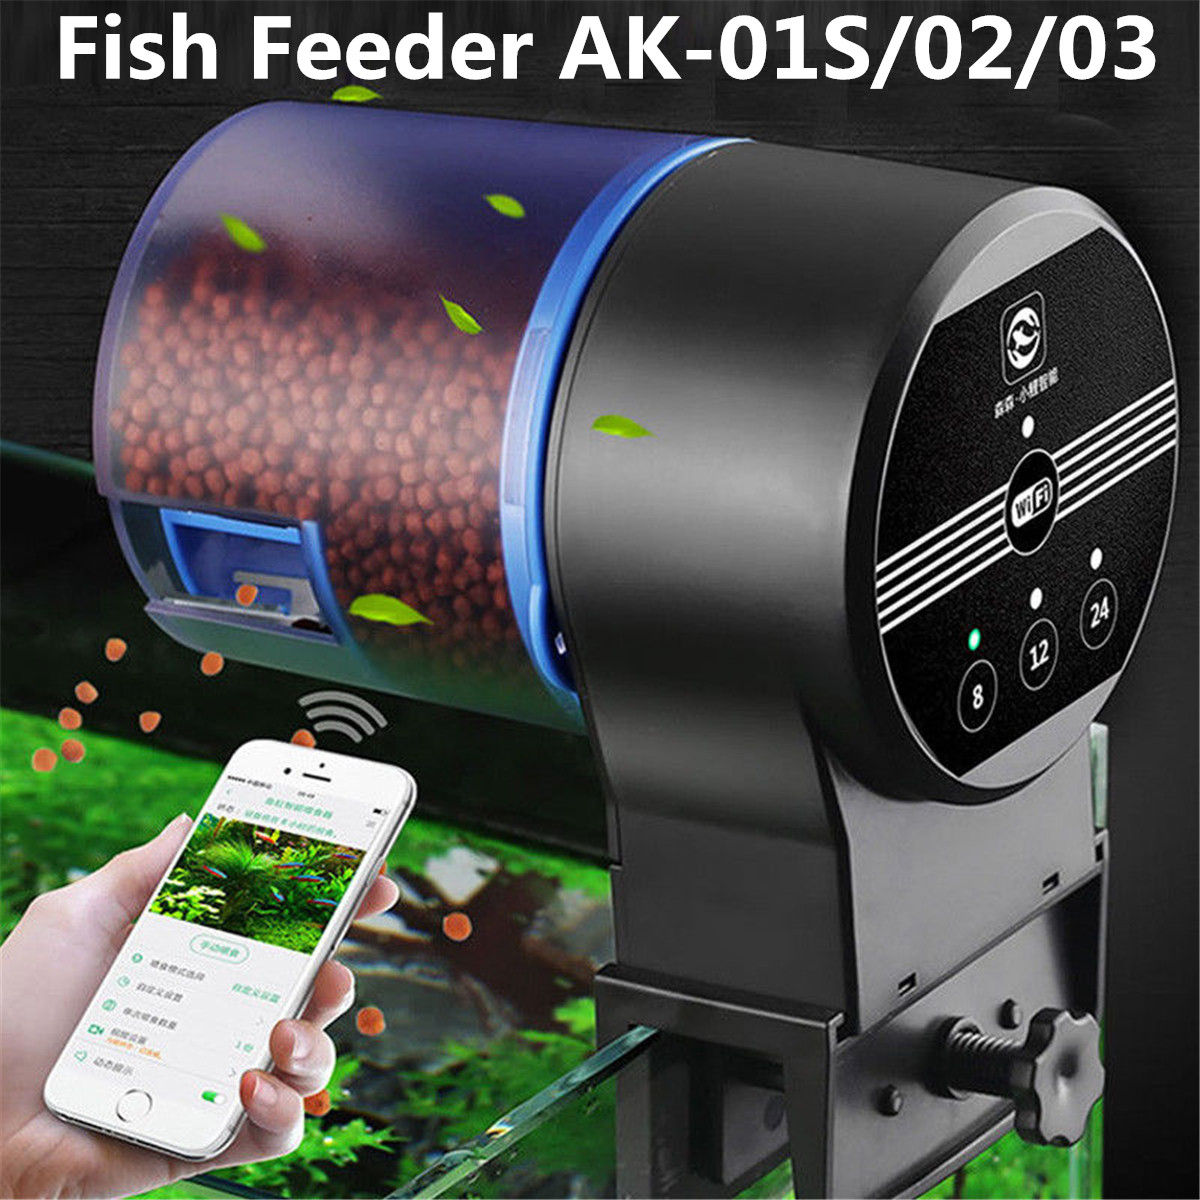 Sunsun-AK-01S0203-Aquarium-Automatic-Fish-Feeder-Timing-Control-Auto-Food-Dispenser-1443425-1